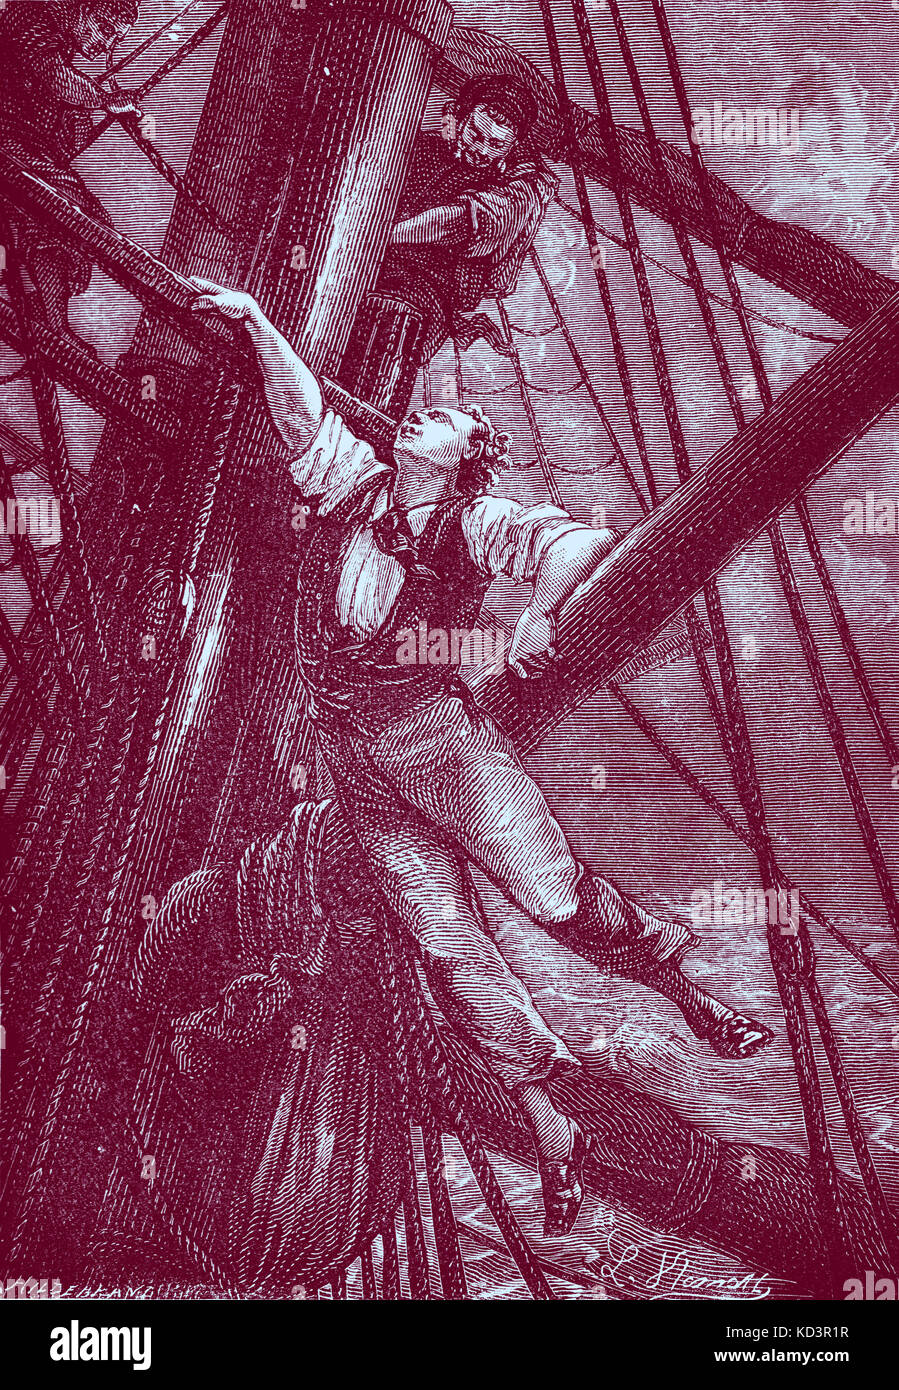 Il giro del mondo in ottanta giorni / Le Tour du monde en quatre-vingts jours di Jules Verne. Pubblicato per la prima volta 1873 (illustrazione dal 1892 edition da Leon Benet). La didascalia recita: " Egli ha preso una mano a tutto e astnished l equipaggio (scalata della nave di armamento ) '. Capitolo 18 - in cui Filea Fogg, passepartout, e Fix andare ogni circa la sua azienda . JV romanziere francese 8 Febbraio 1828 - 24 Marzo 1905. (Filea Fogg di Londra e il suo cameriere francese Passepartout tentano di circumnavigare il mondo in 80 giorni su un £20.000 Puntata impostato dai suoi amici al Club di riforma). Foto Stock